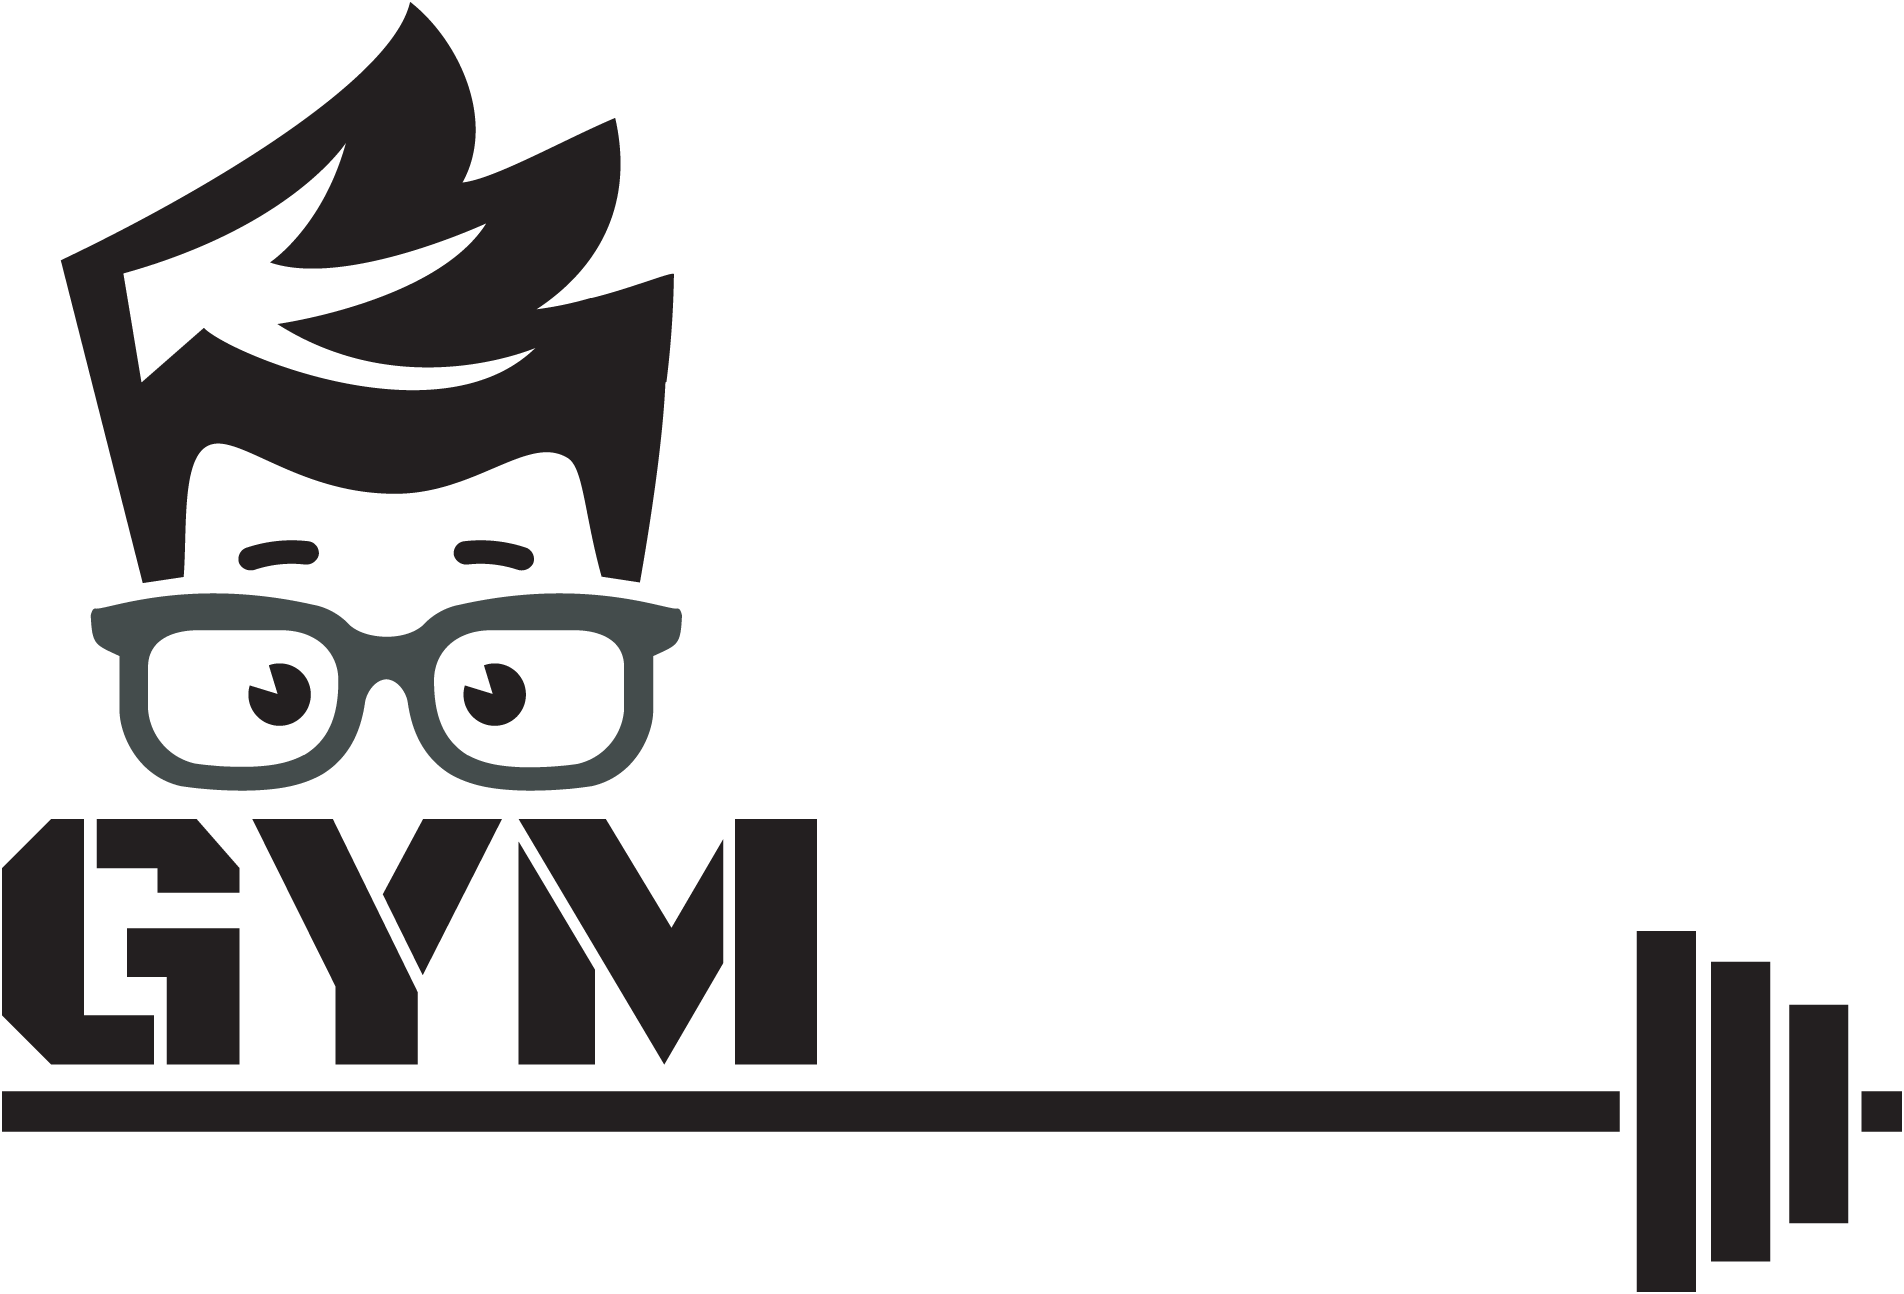 nerd fitness logo clipart